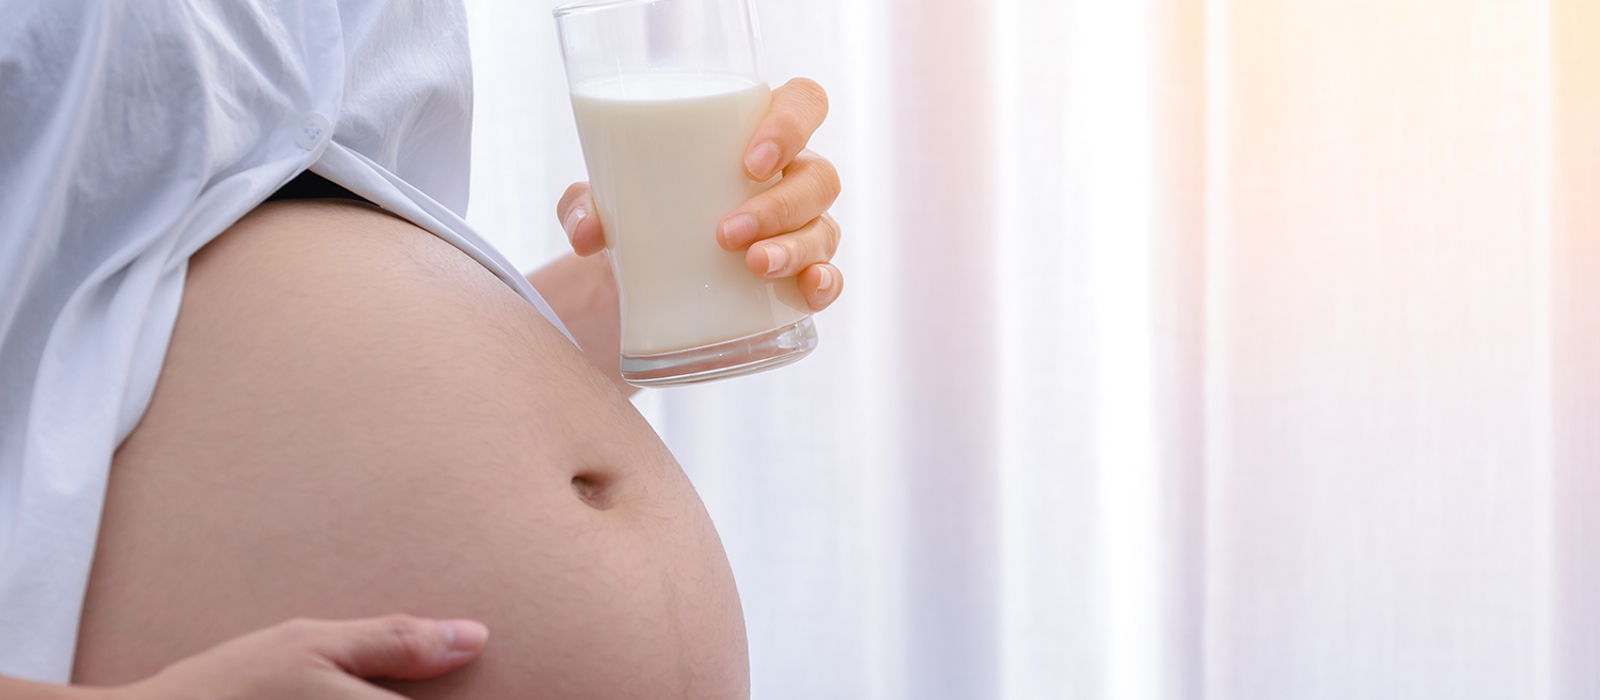 นมสำหรับแม่ตั้งครรภ์ นมแบบไหนที่ใช่ แบบไหนมีแคลเซี่ยม